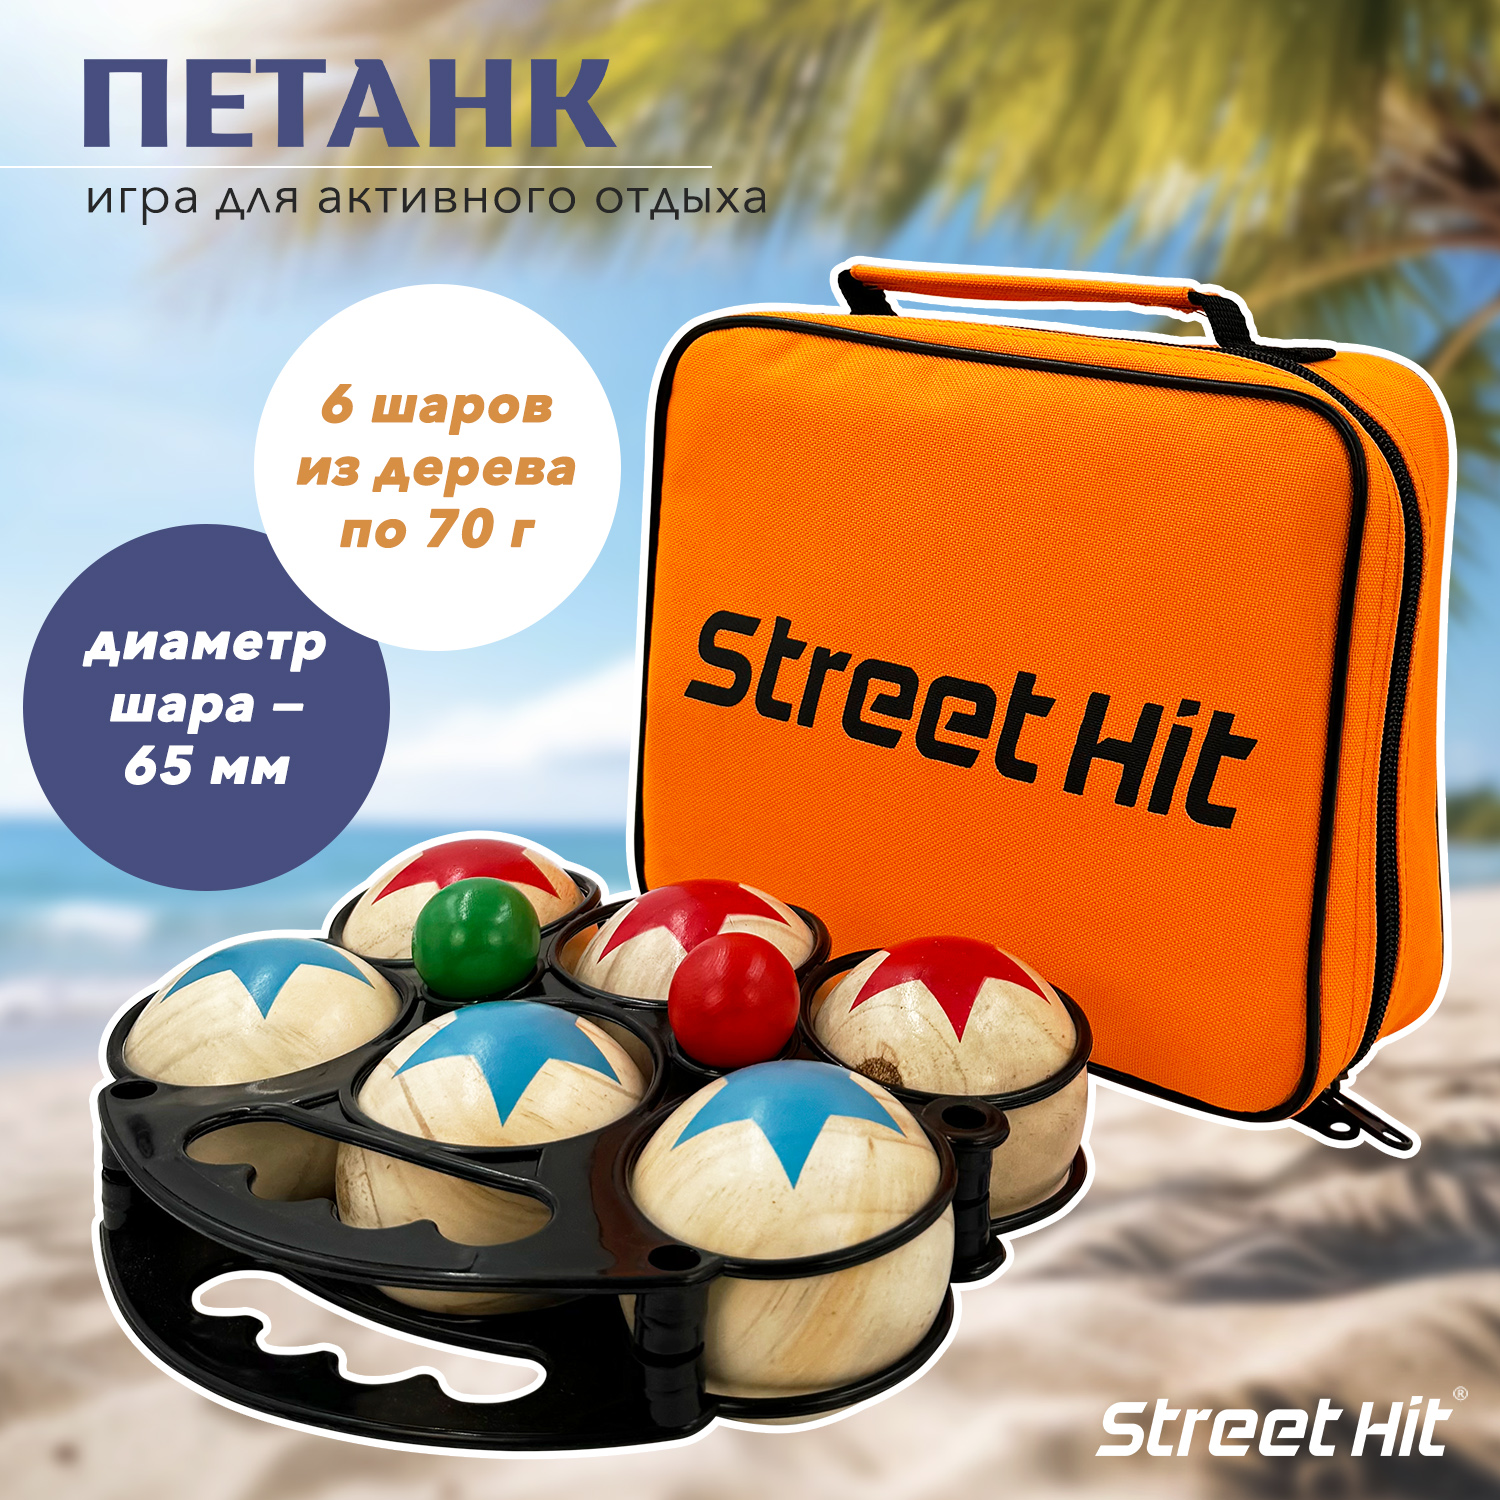 Набор для игры Street Hit Петанк, 6 шаров из дерева, красный+синий